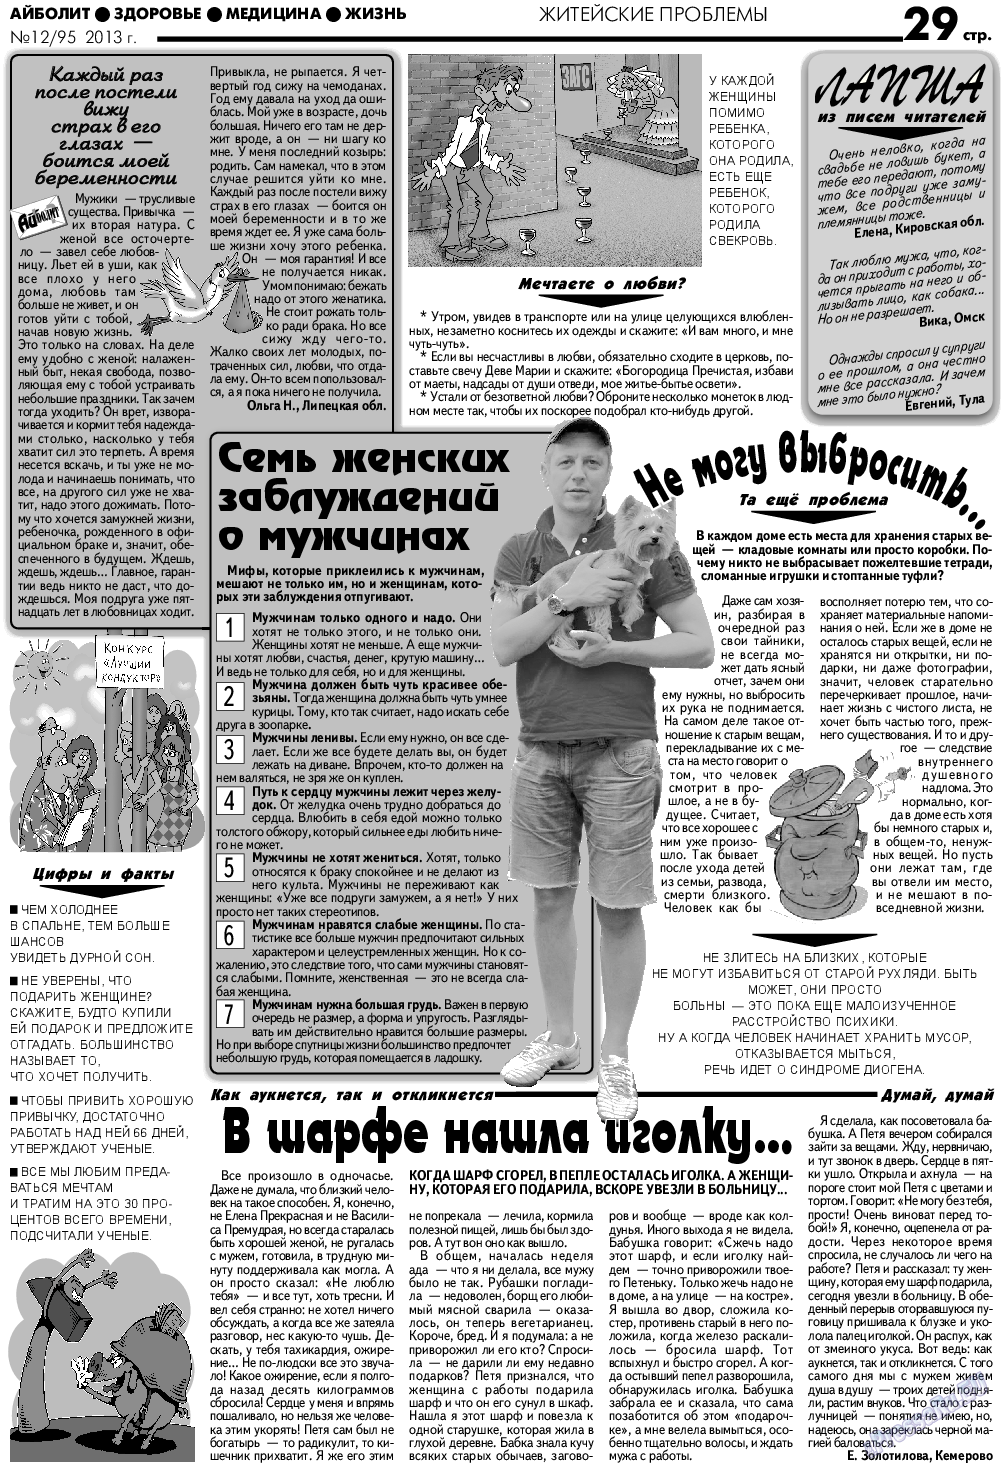 АйБолит, газета. 2013 №12 стр.29